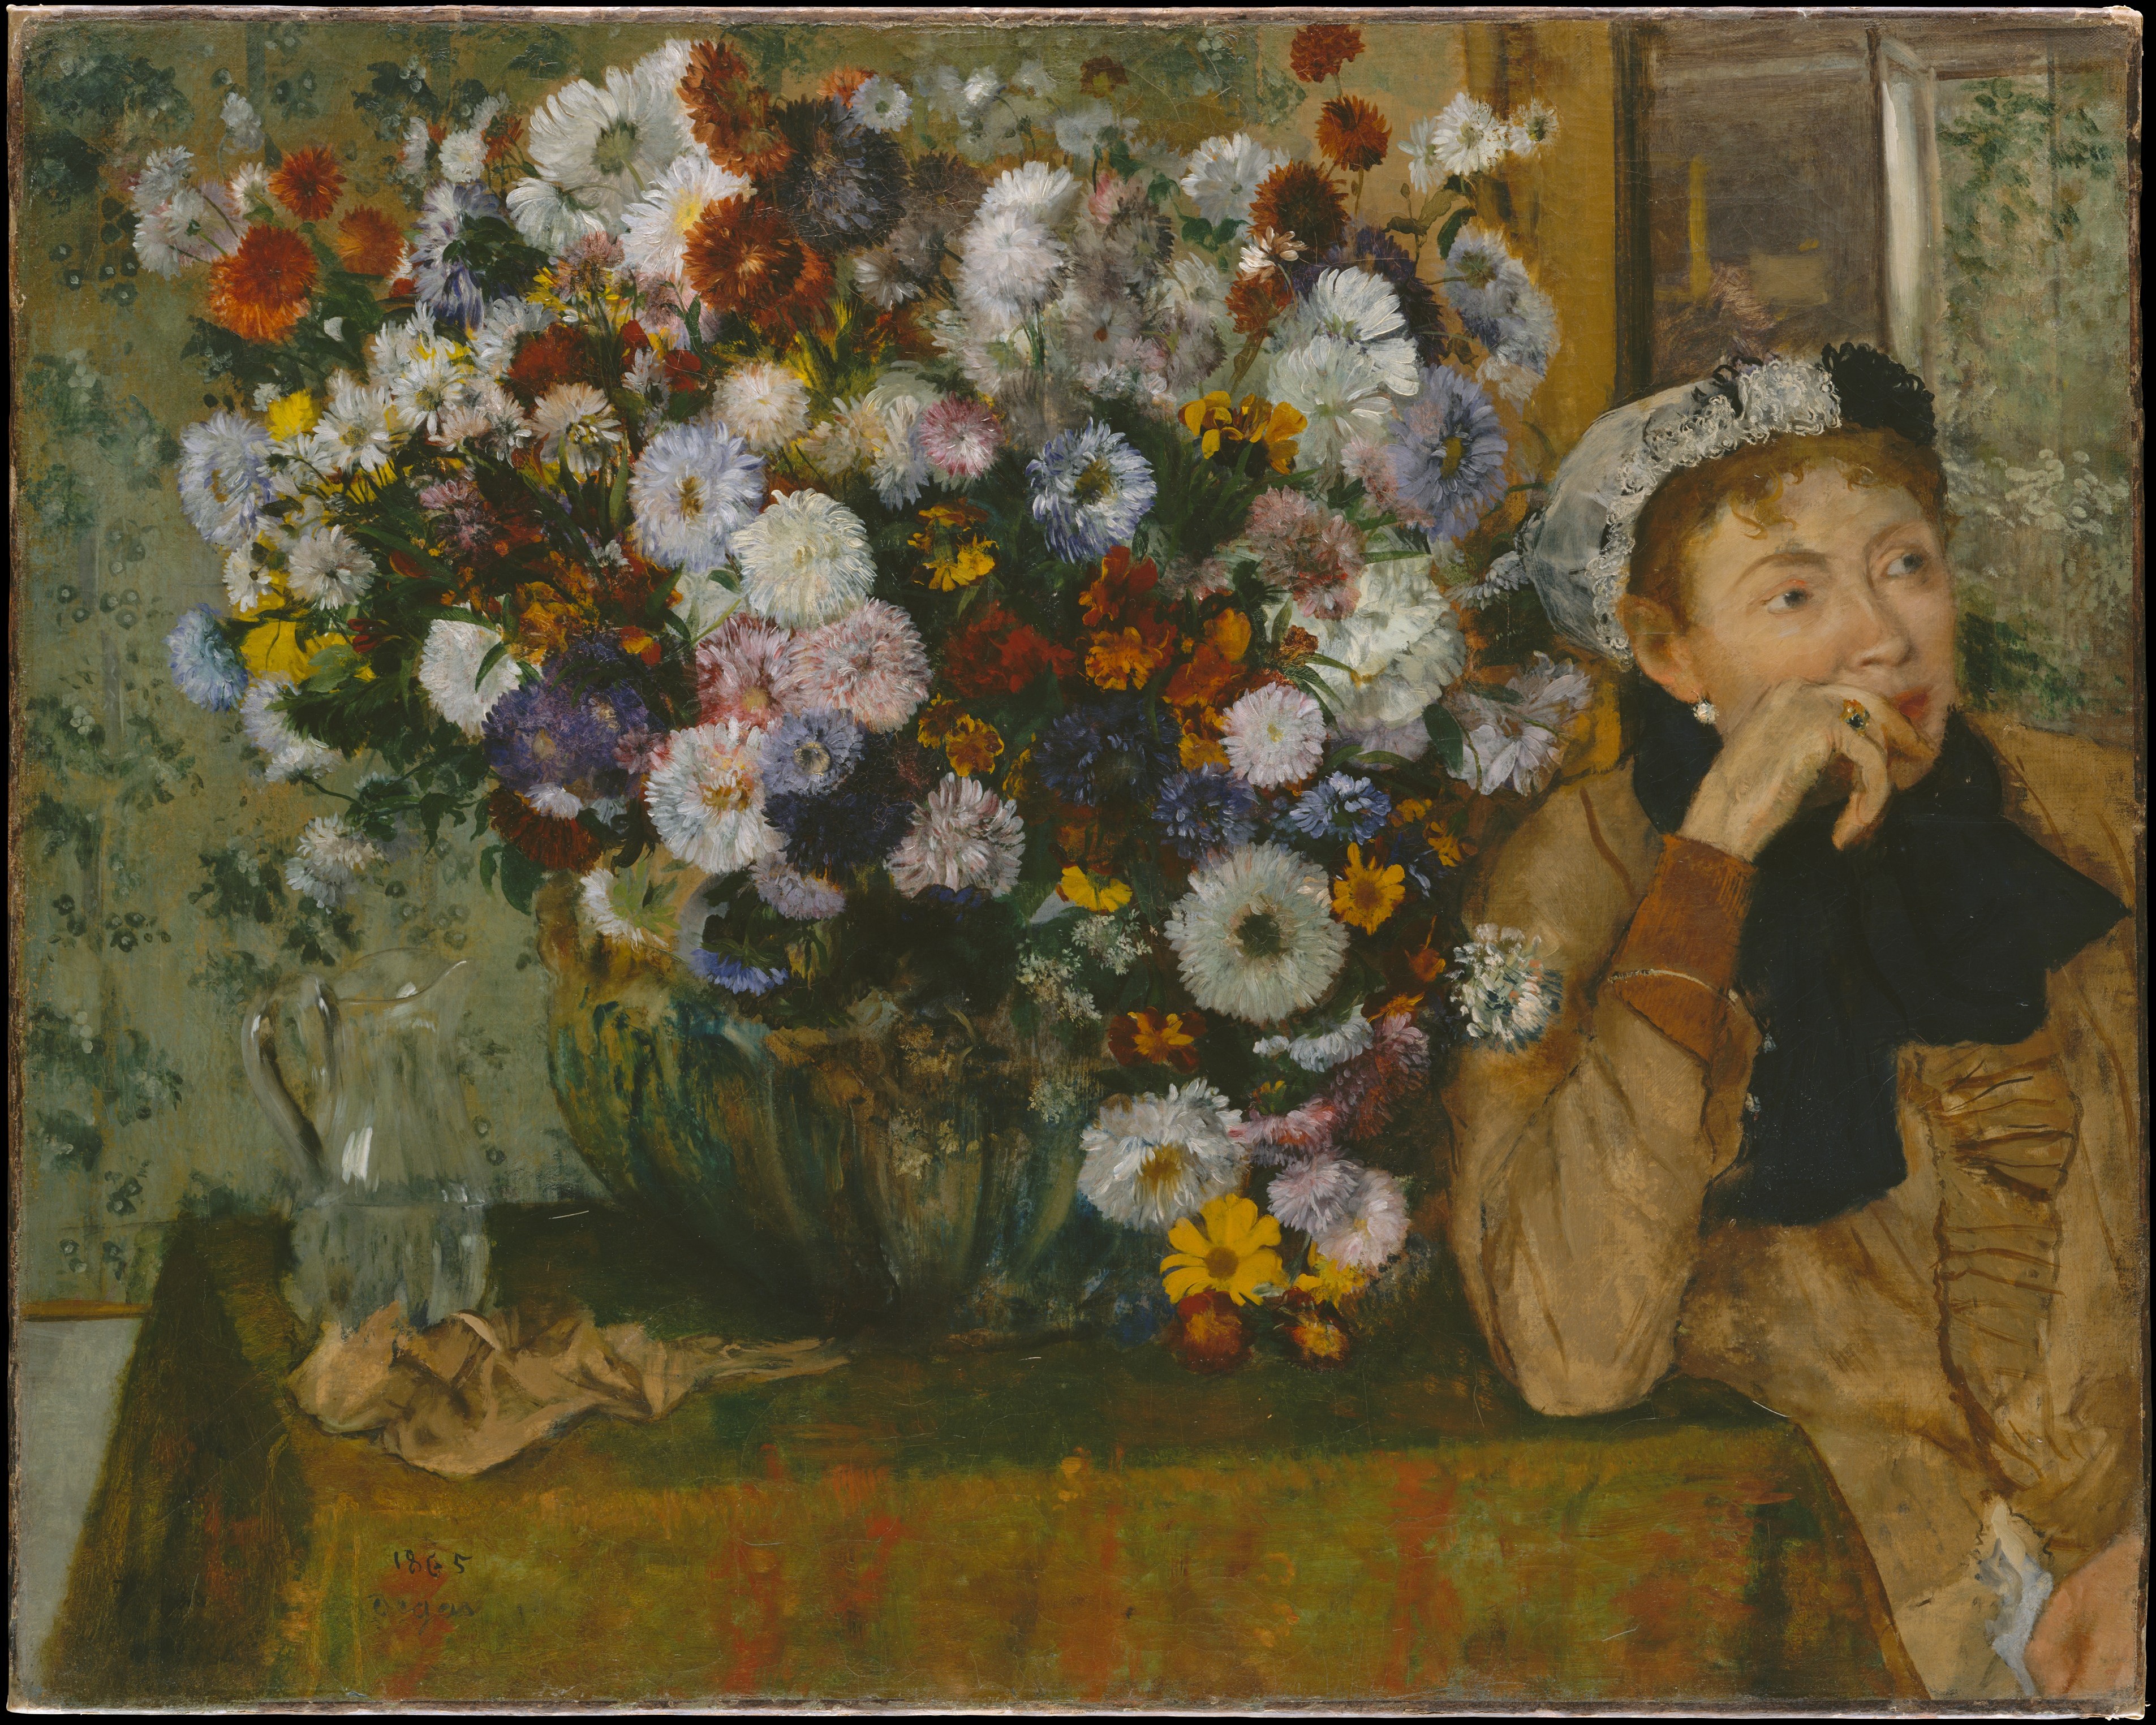 Жінка, що сидить біля вази з квітами (Madame Paul Valpinçon?) by Edgar Degas - 1865 - 73.7 x 92.7 см 